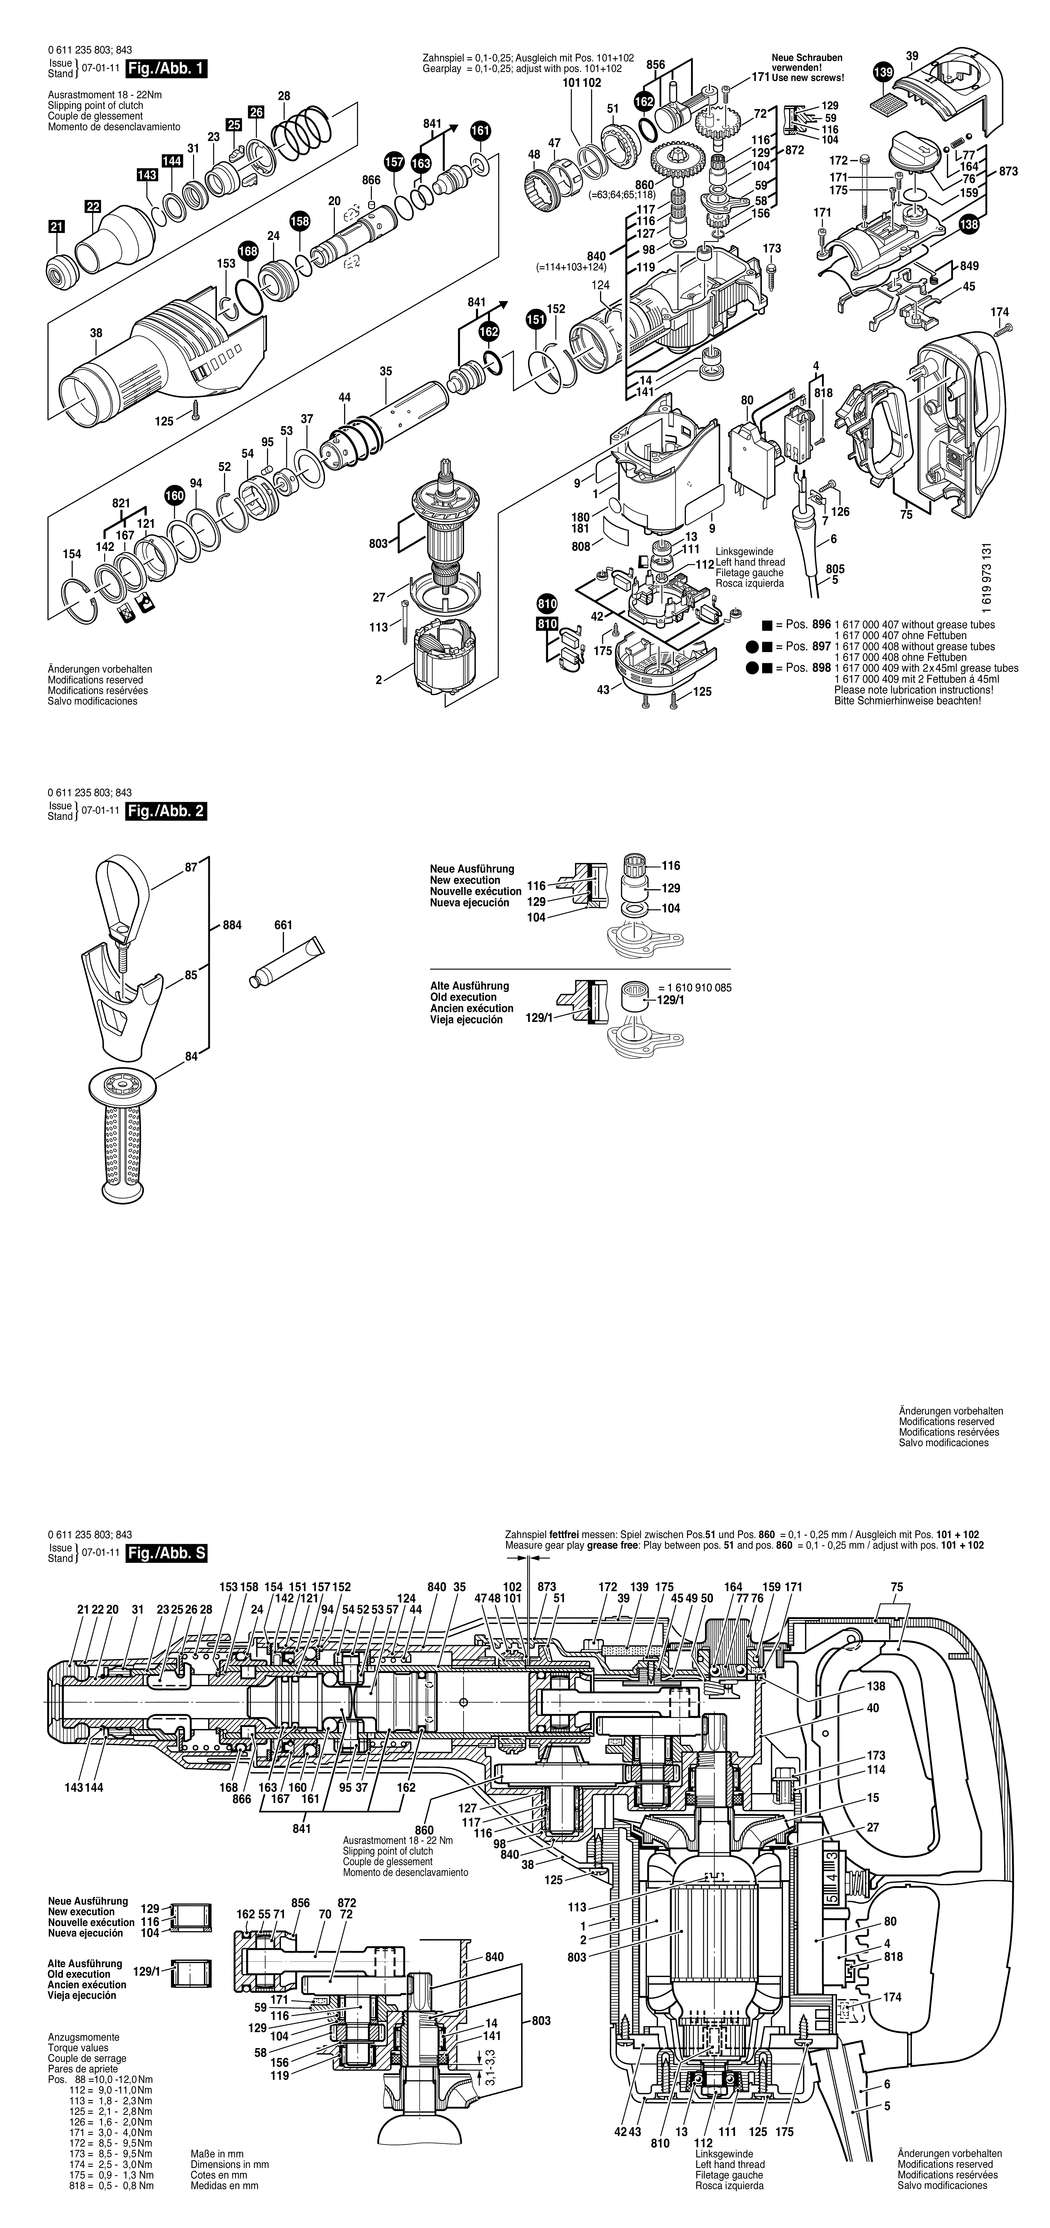 Bosch GBH 7-45 DE / 0611235803 / EU 230 Volt Spare Parts